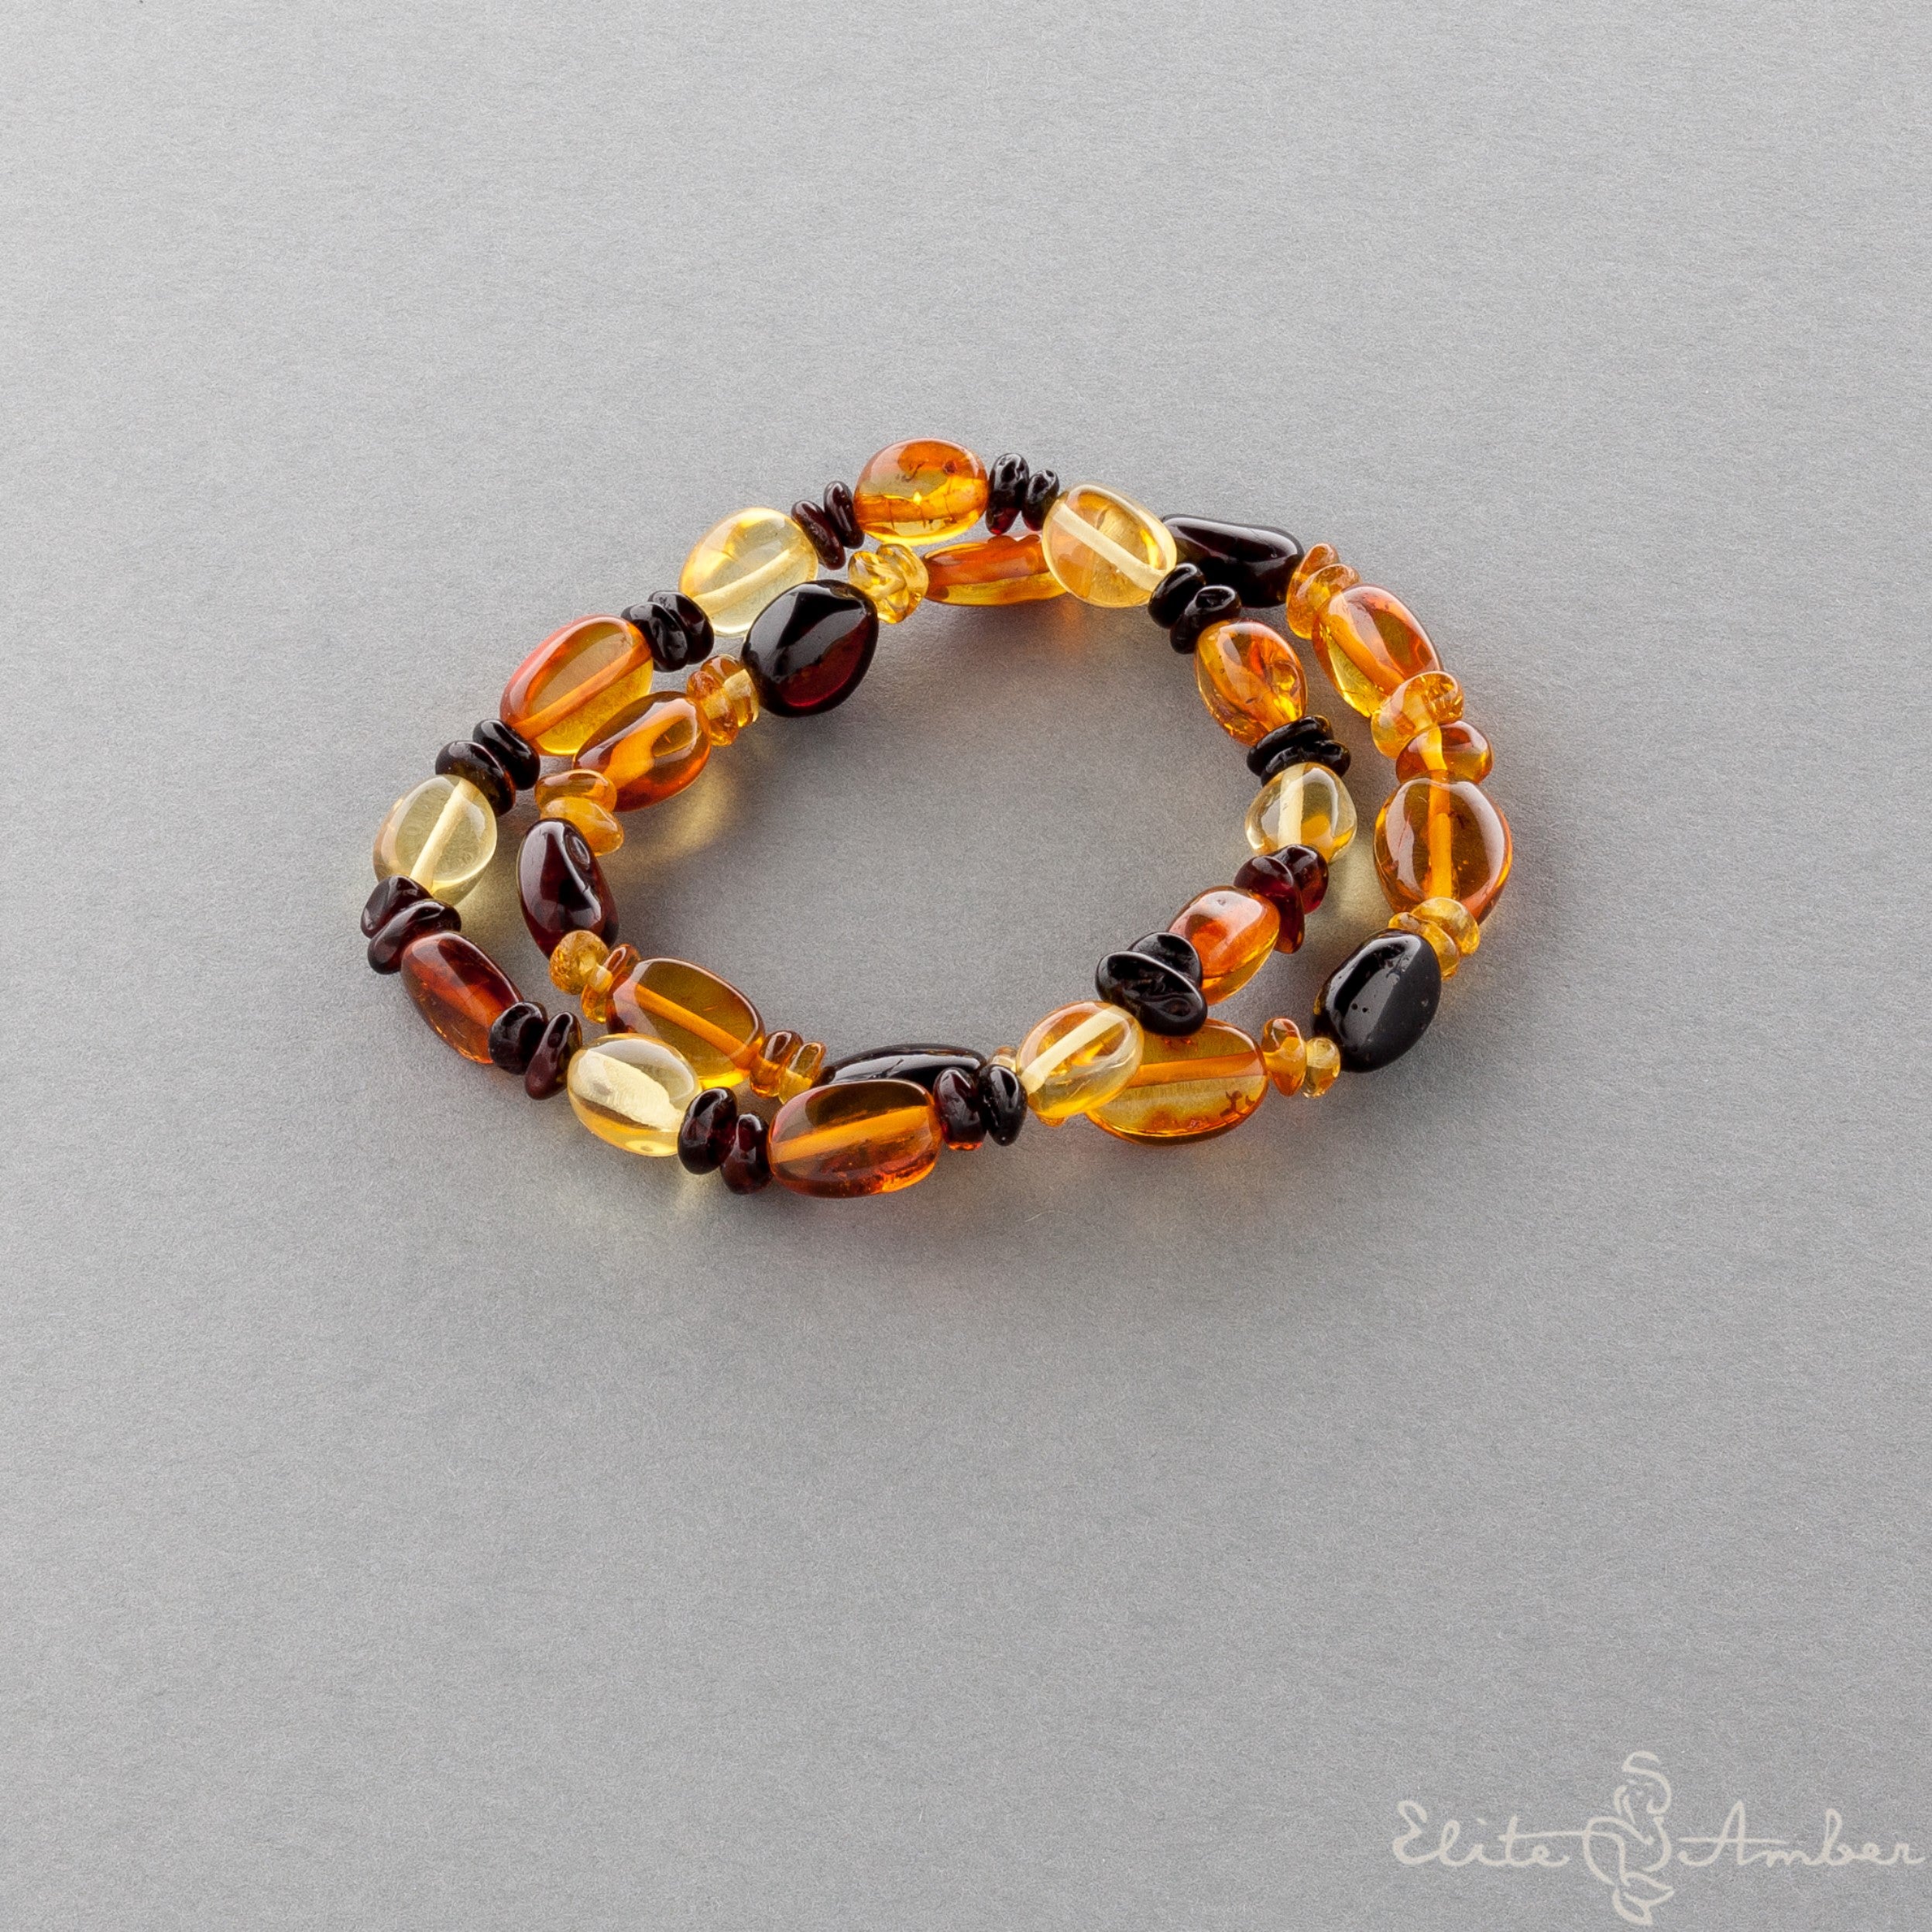 Amber bracelet "Polished amber pebble"